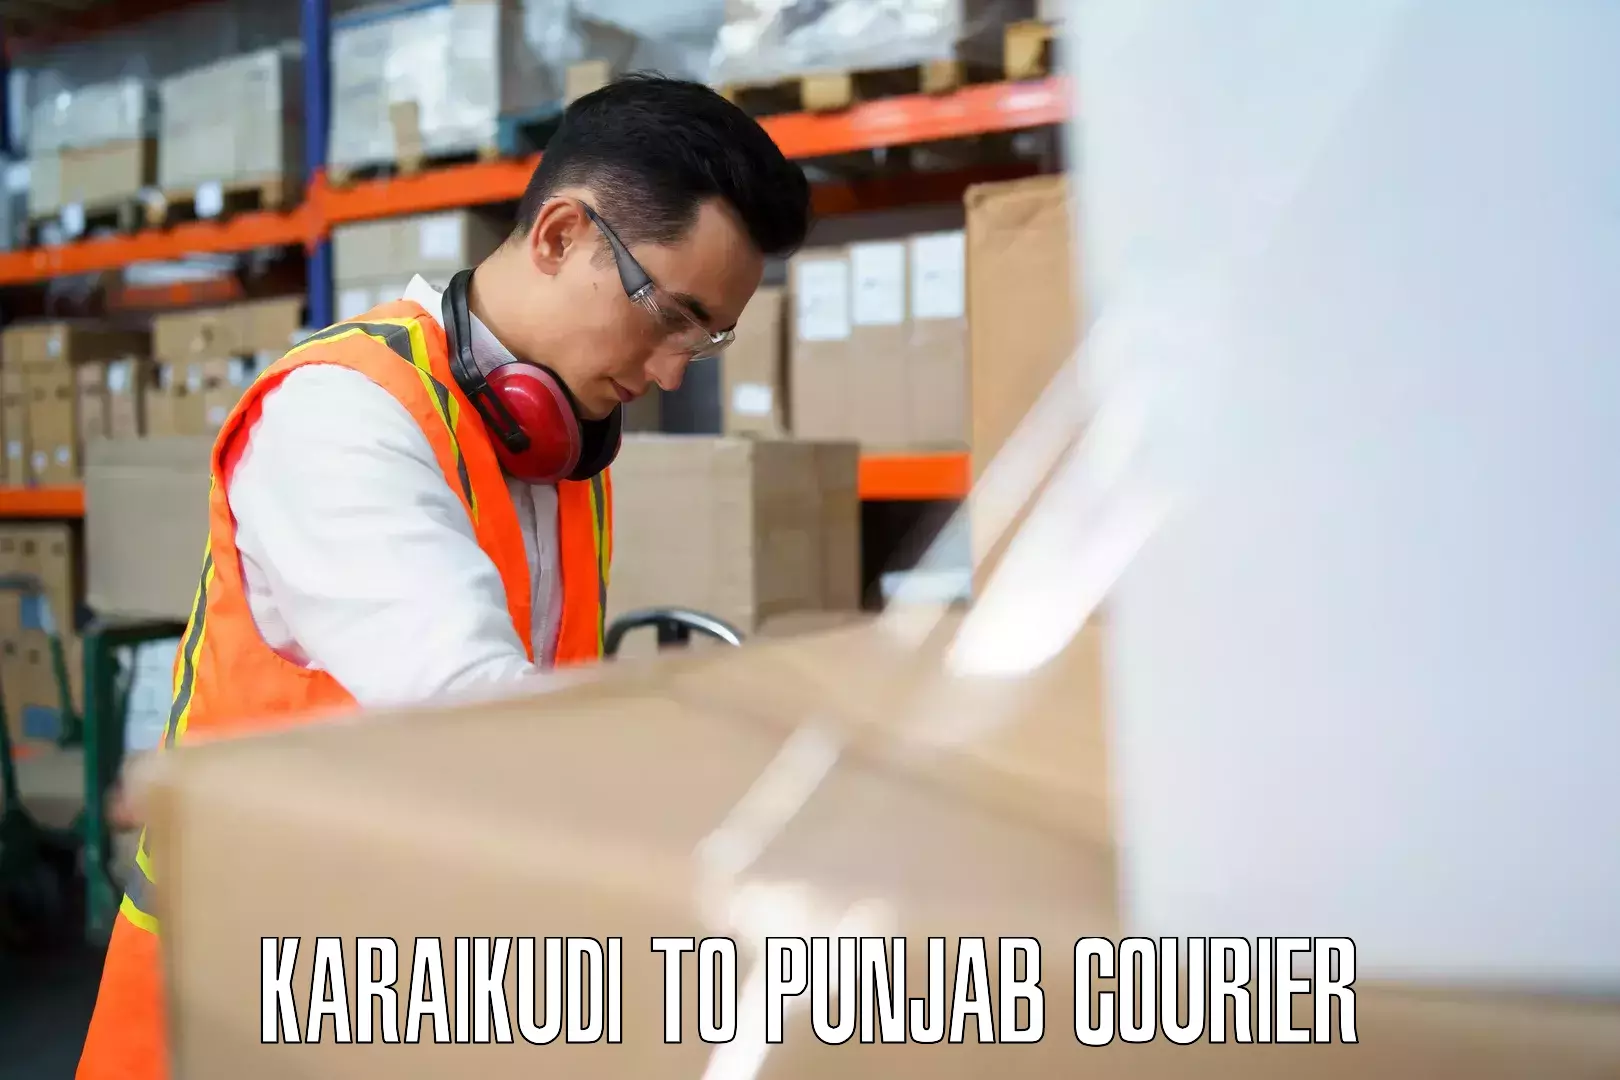 Luggage shipment specialists Karaikudi to Punjab